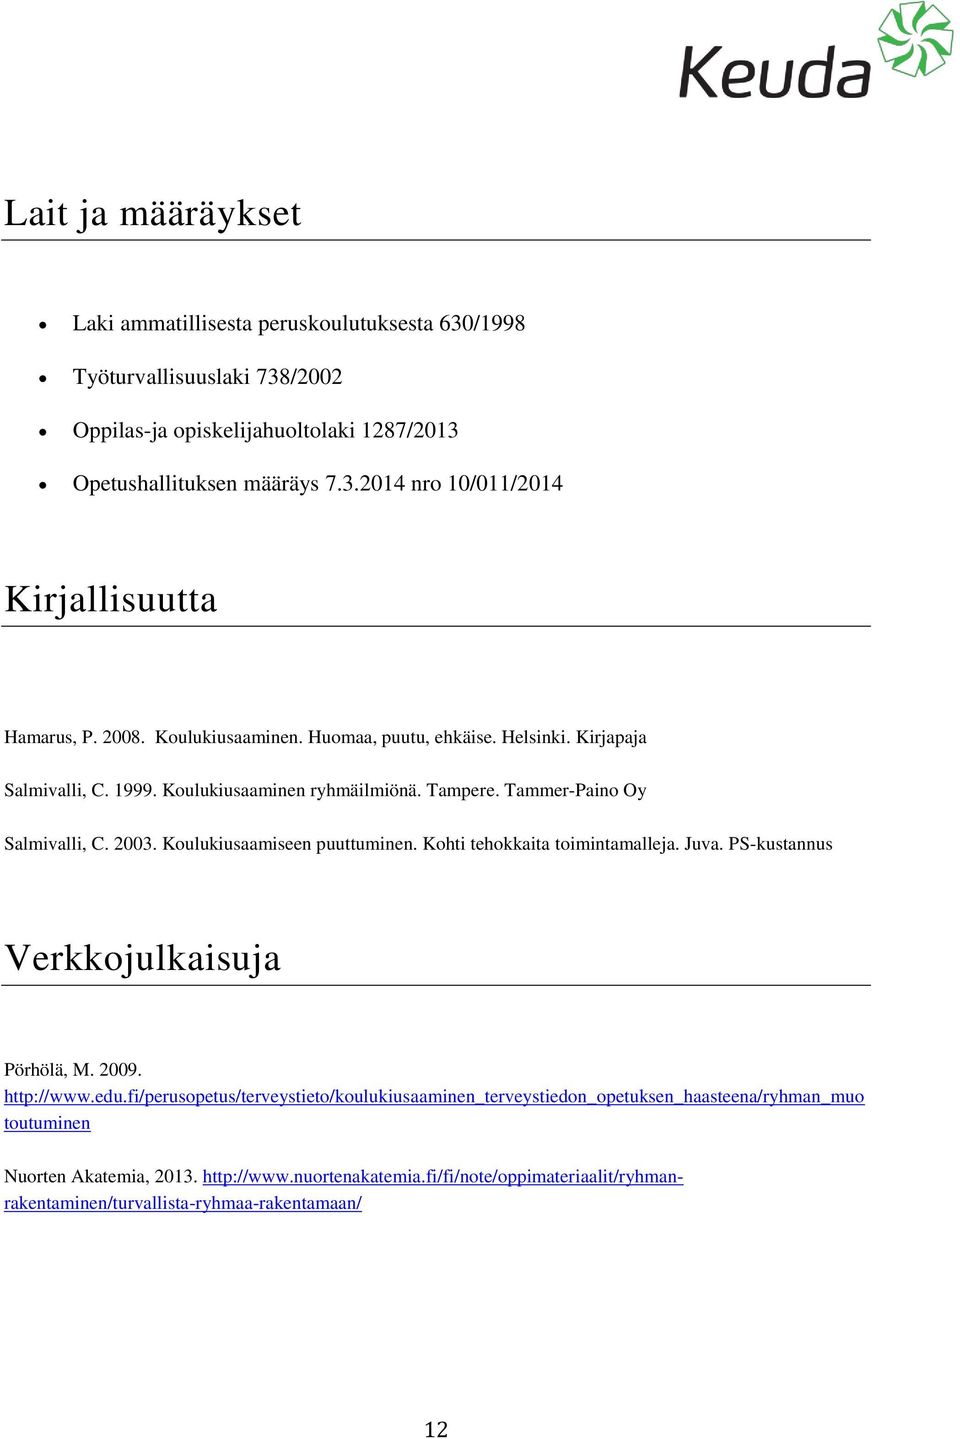 Koulukiusaamiseen puuttuminen. Kohti tehokkaita toimintamalleja. Juva. PS-kustannus Verkkojulkaisuja Pörhölä, M. 2009. http://www.edu.